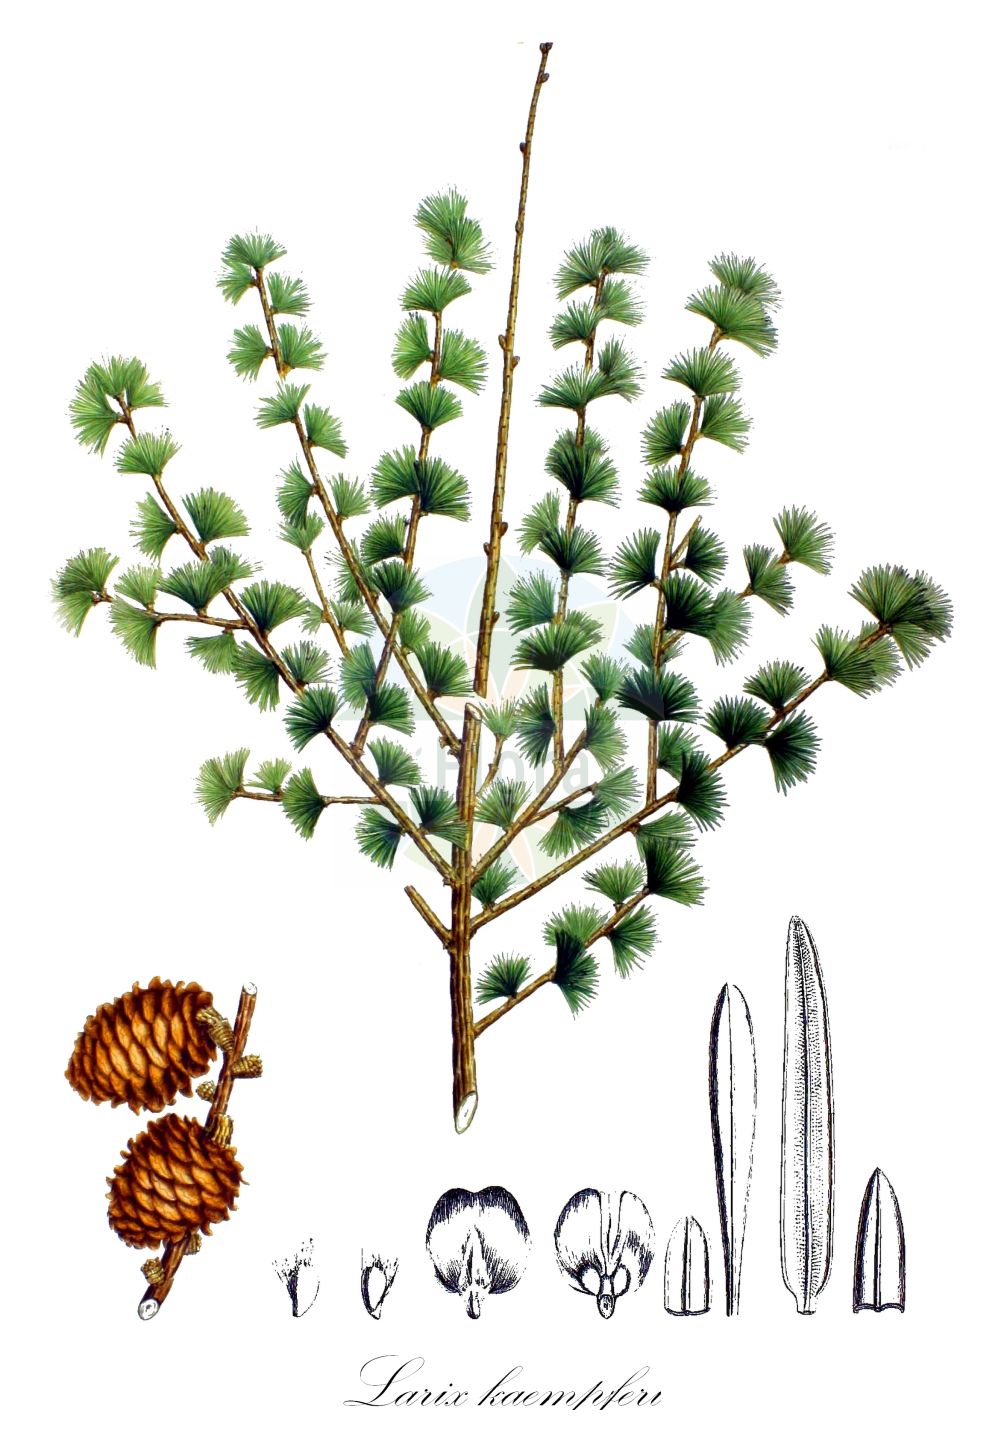 Historische Abbildung von Larix kaempferi (Japanische Lärche - Japanese Larch). Das Bild zeigt Blatt, Bluete, Frucht und Same. ---- Historical Drawing of Larix kaempferi (Japanische Lärche - Japanese Larch). The image is showing leaf, flower, fruit and seed.(Larix kaempferi,Japanische Lärche,Japanese Larch,Abies leptolepis,Larix japonica,Larix kaempferi,Larix leptolepis,Pinus kaempferi,Japanische Laerche,Japanese Larch,Larix,Lärche,Larch,Pinaceae,Kieferngewächse,Pine family,Blatt,Bluete,Frucht,Same,leaf,flower,fruit,seed,von Siebold & Zuccarini (1835-1875))